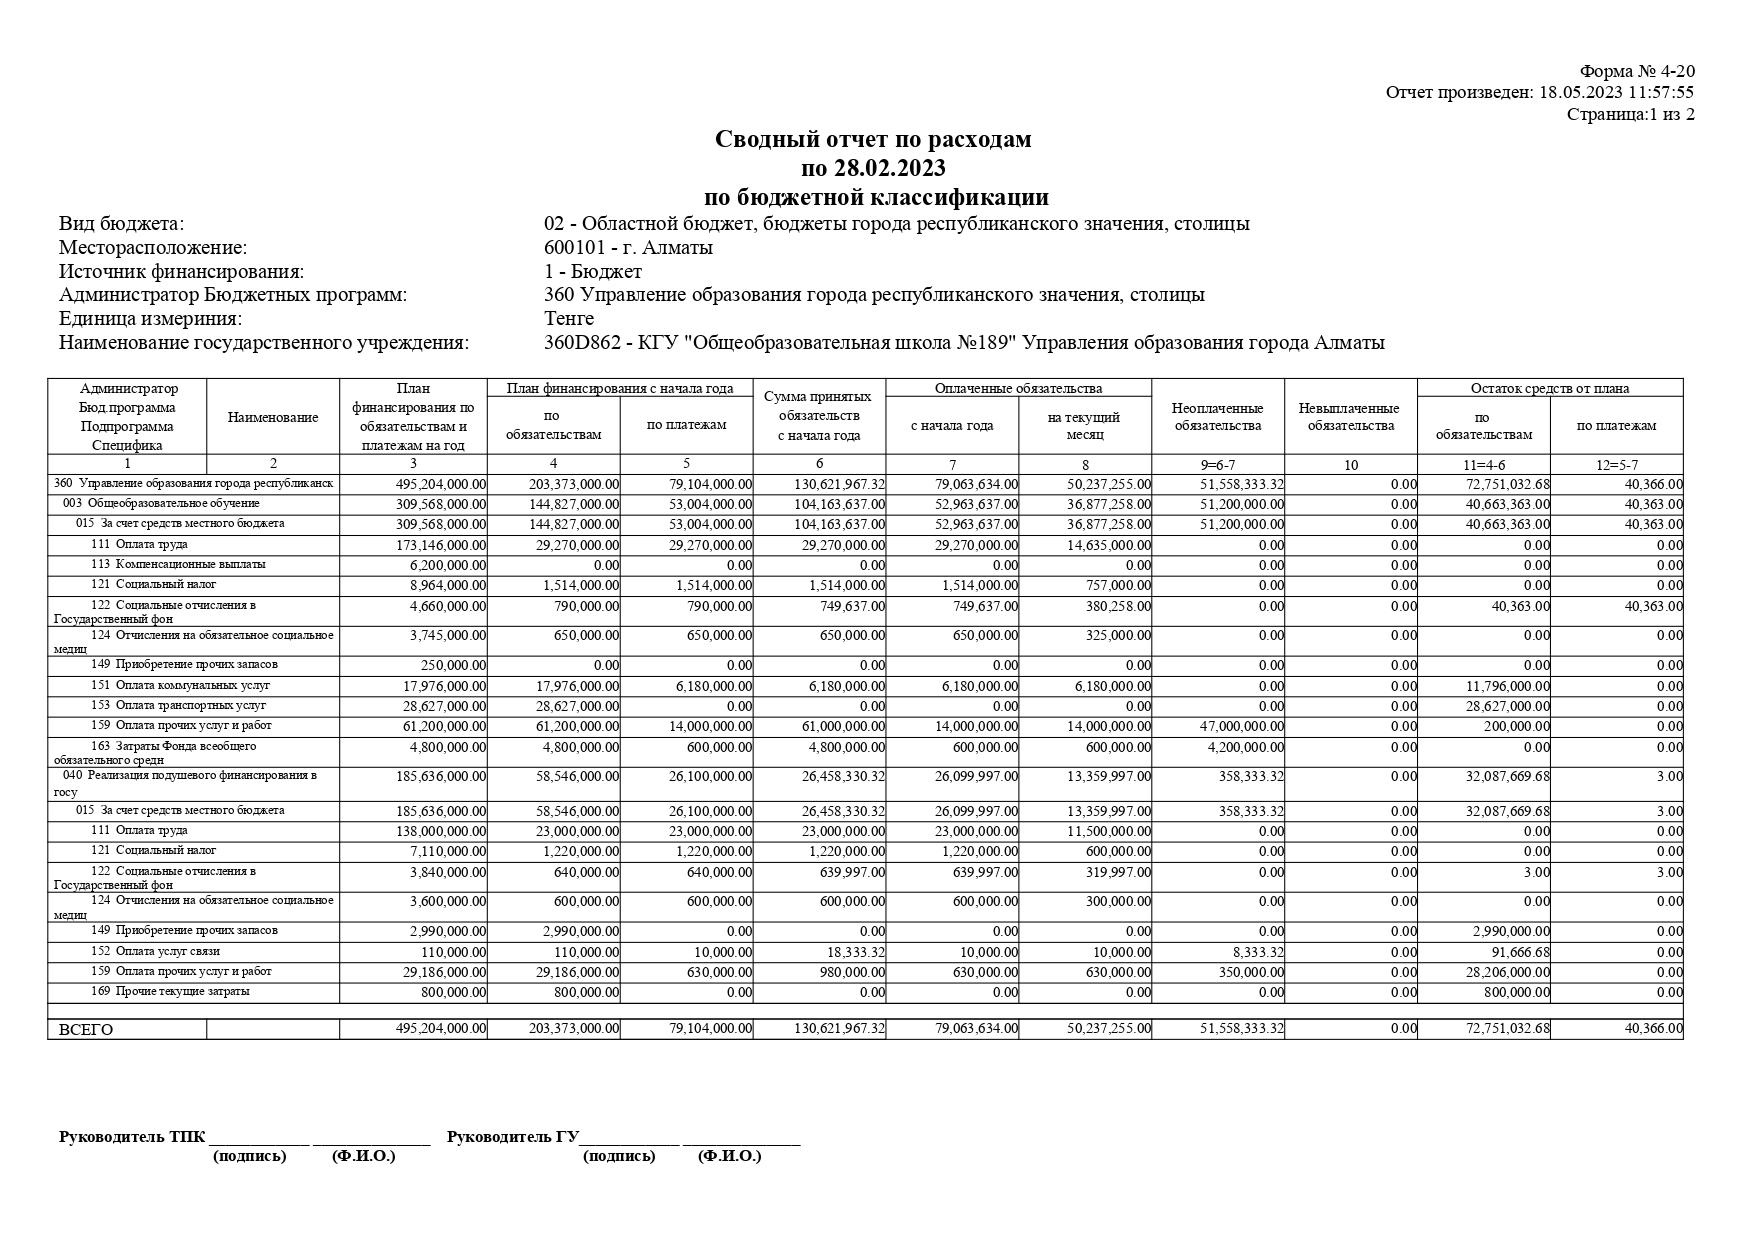 Сводный отчет по расходам по 28.02.2023